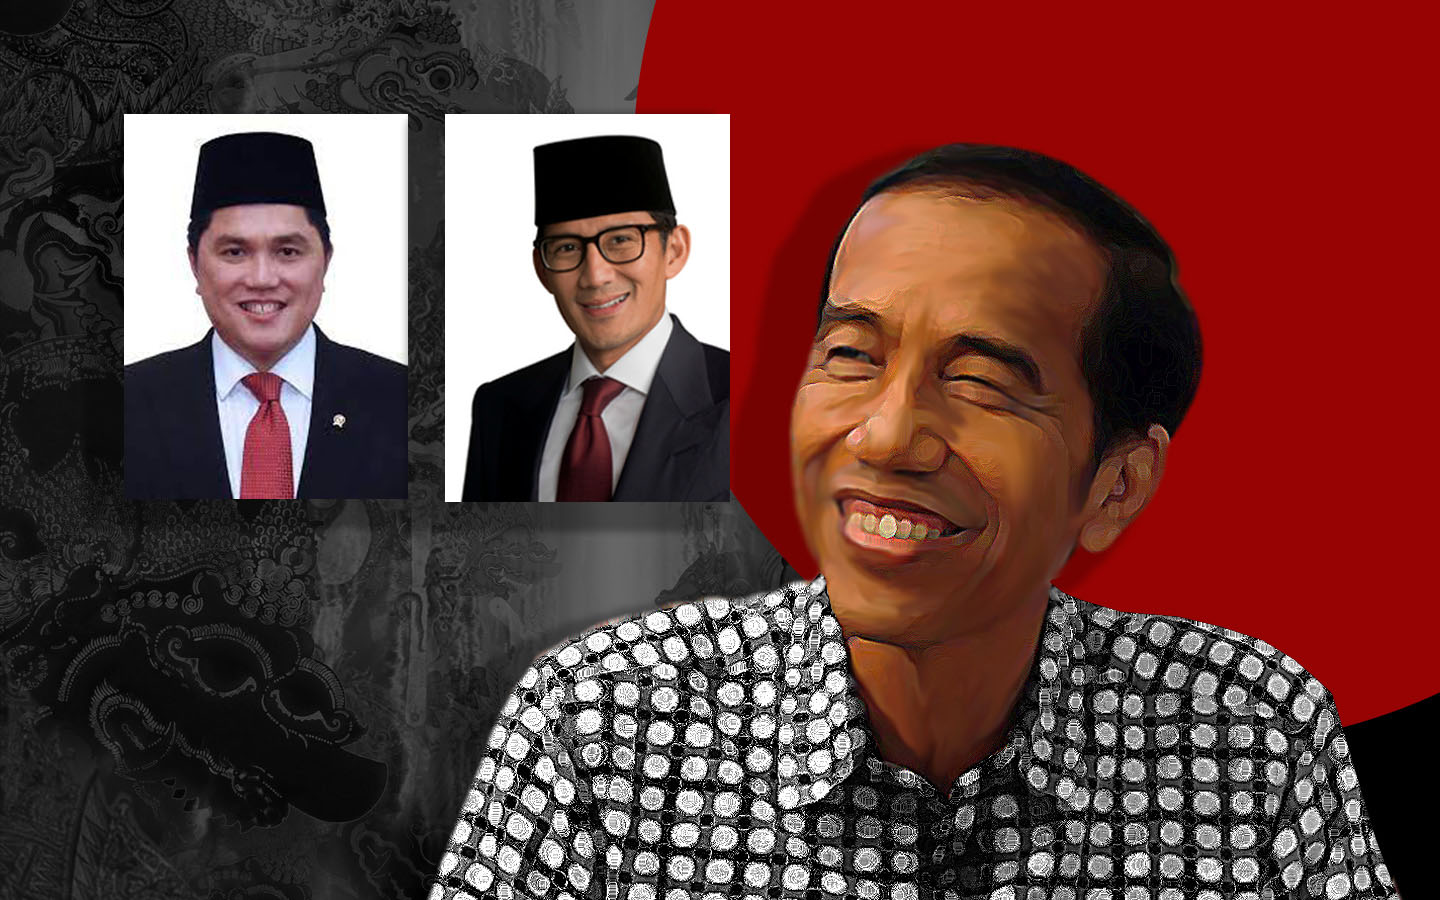 Erick Thohir dan Sandiaga Uno Berpeluang Mundur dari Kabinet Jokowi 